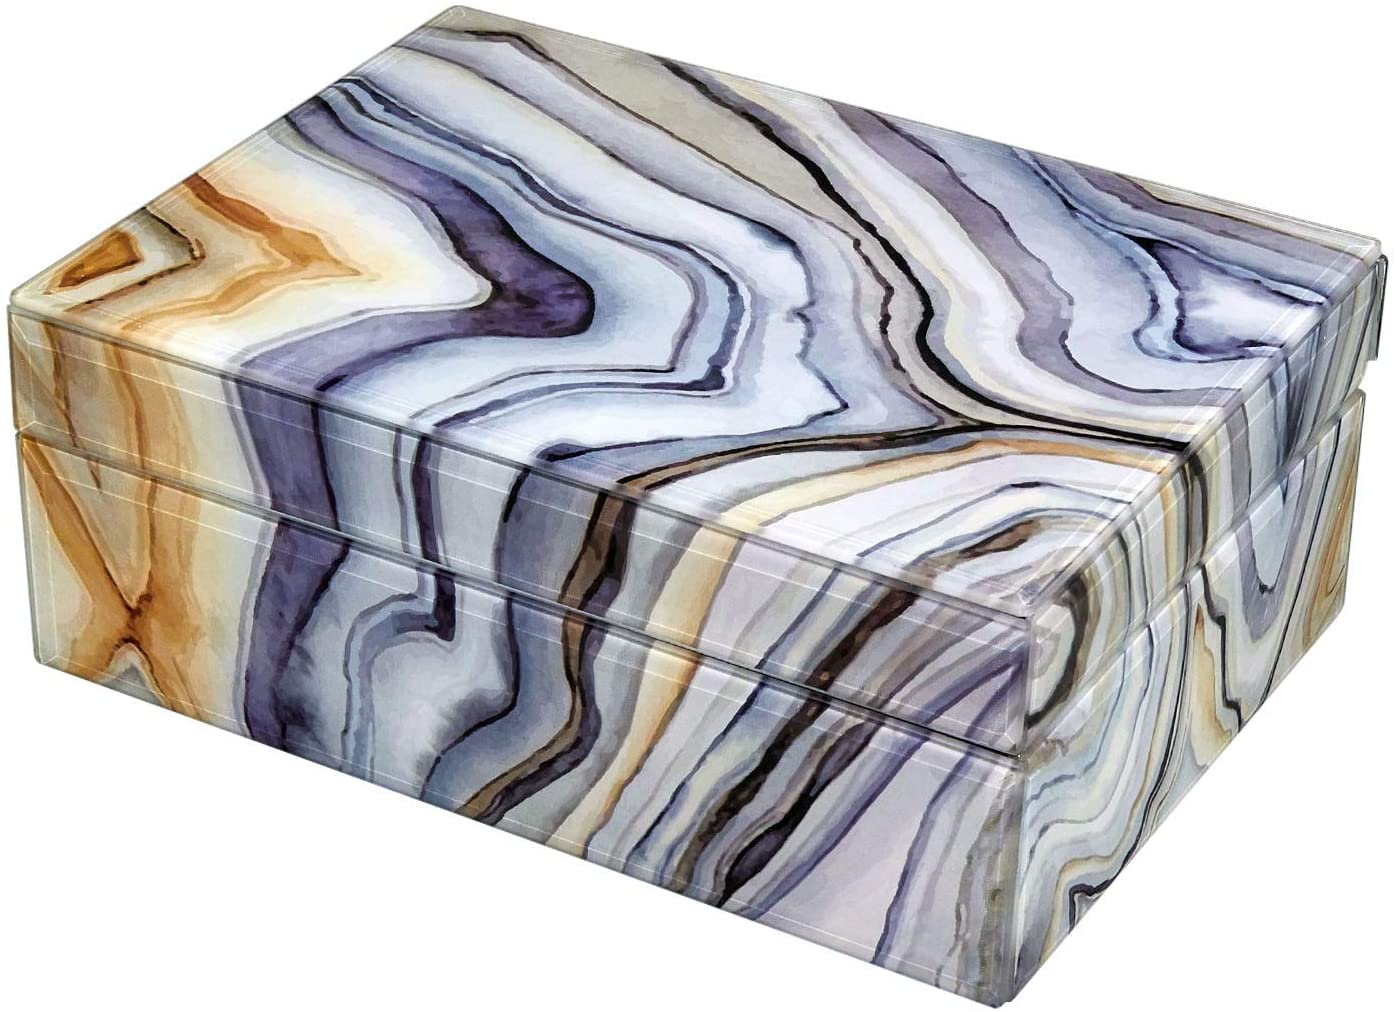 Tizo Designs Home Tizo Italian Designed Wood Marble Ocean Box Small